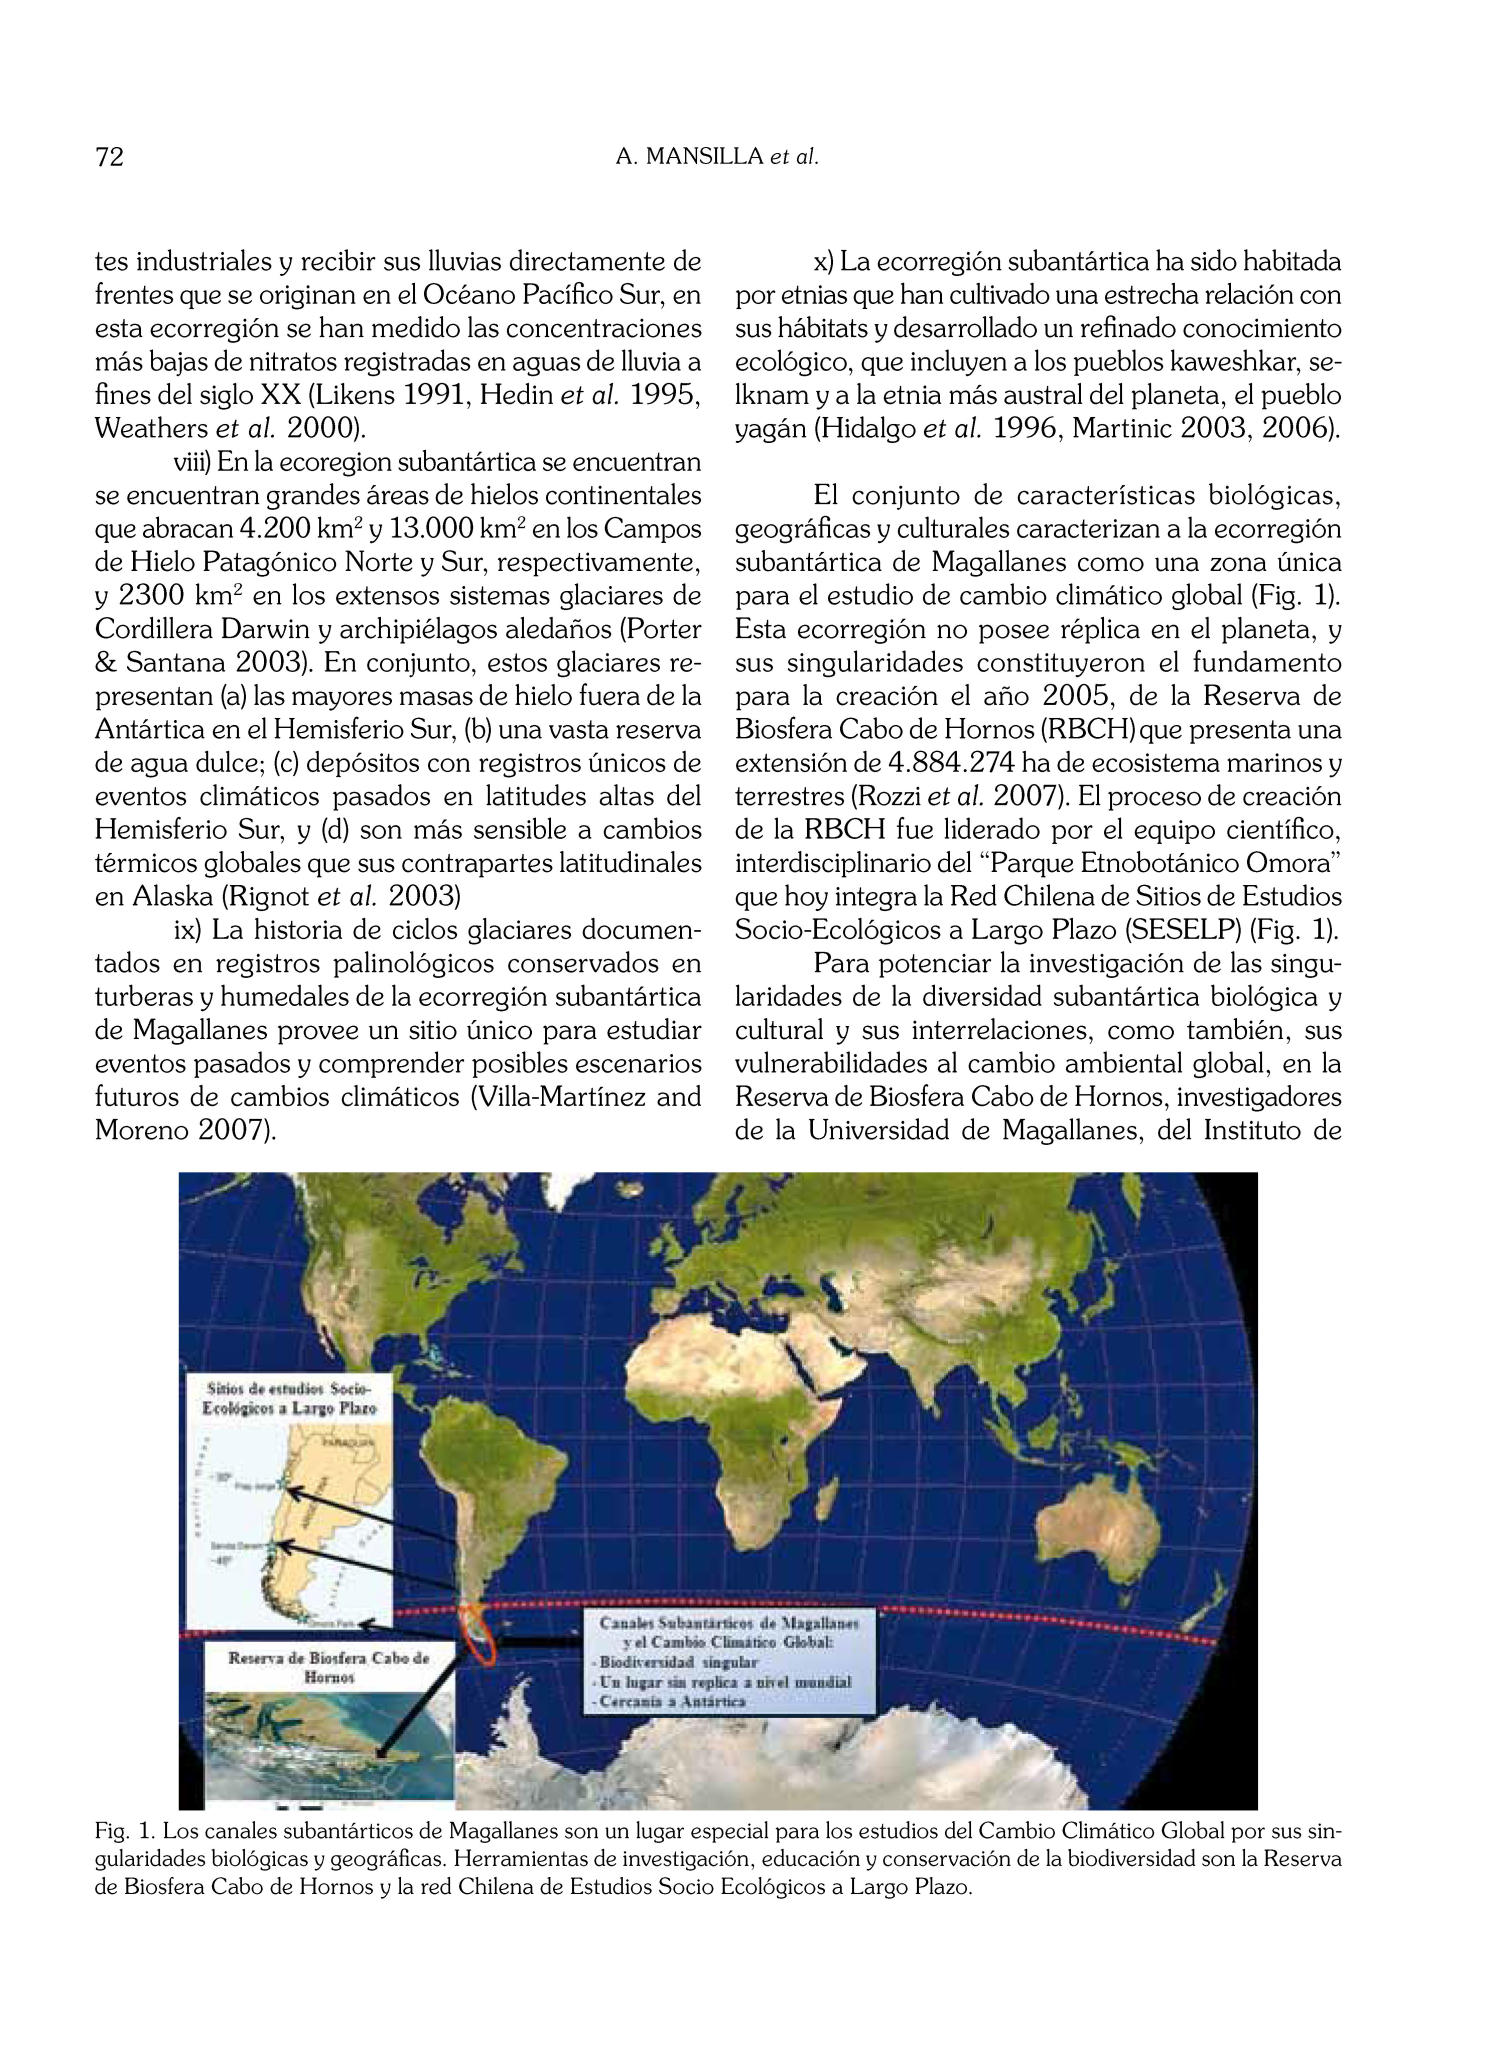 Cambio Climático Global en El Contexto De La Ecorregión Subantártica De Magallanes Y La Reserva De Biósfera Cabo De Hornos
                                                
                                                    72
                                                